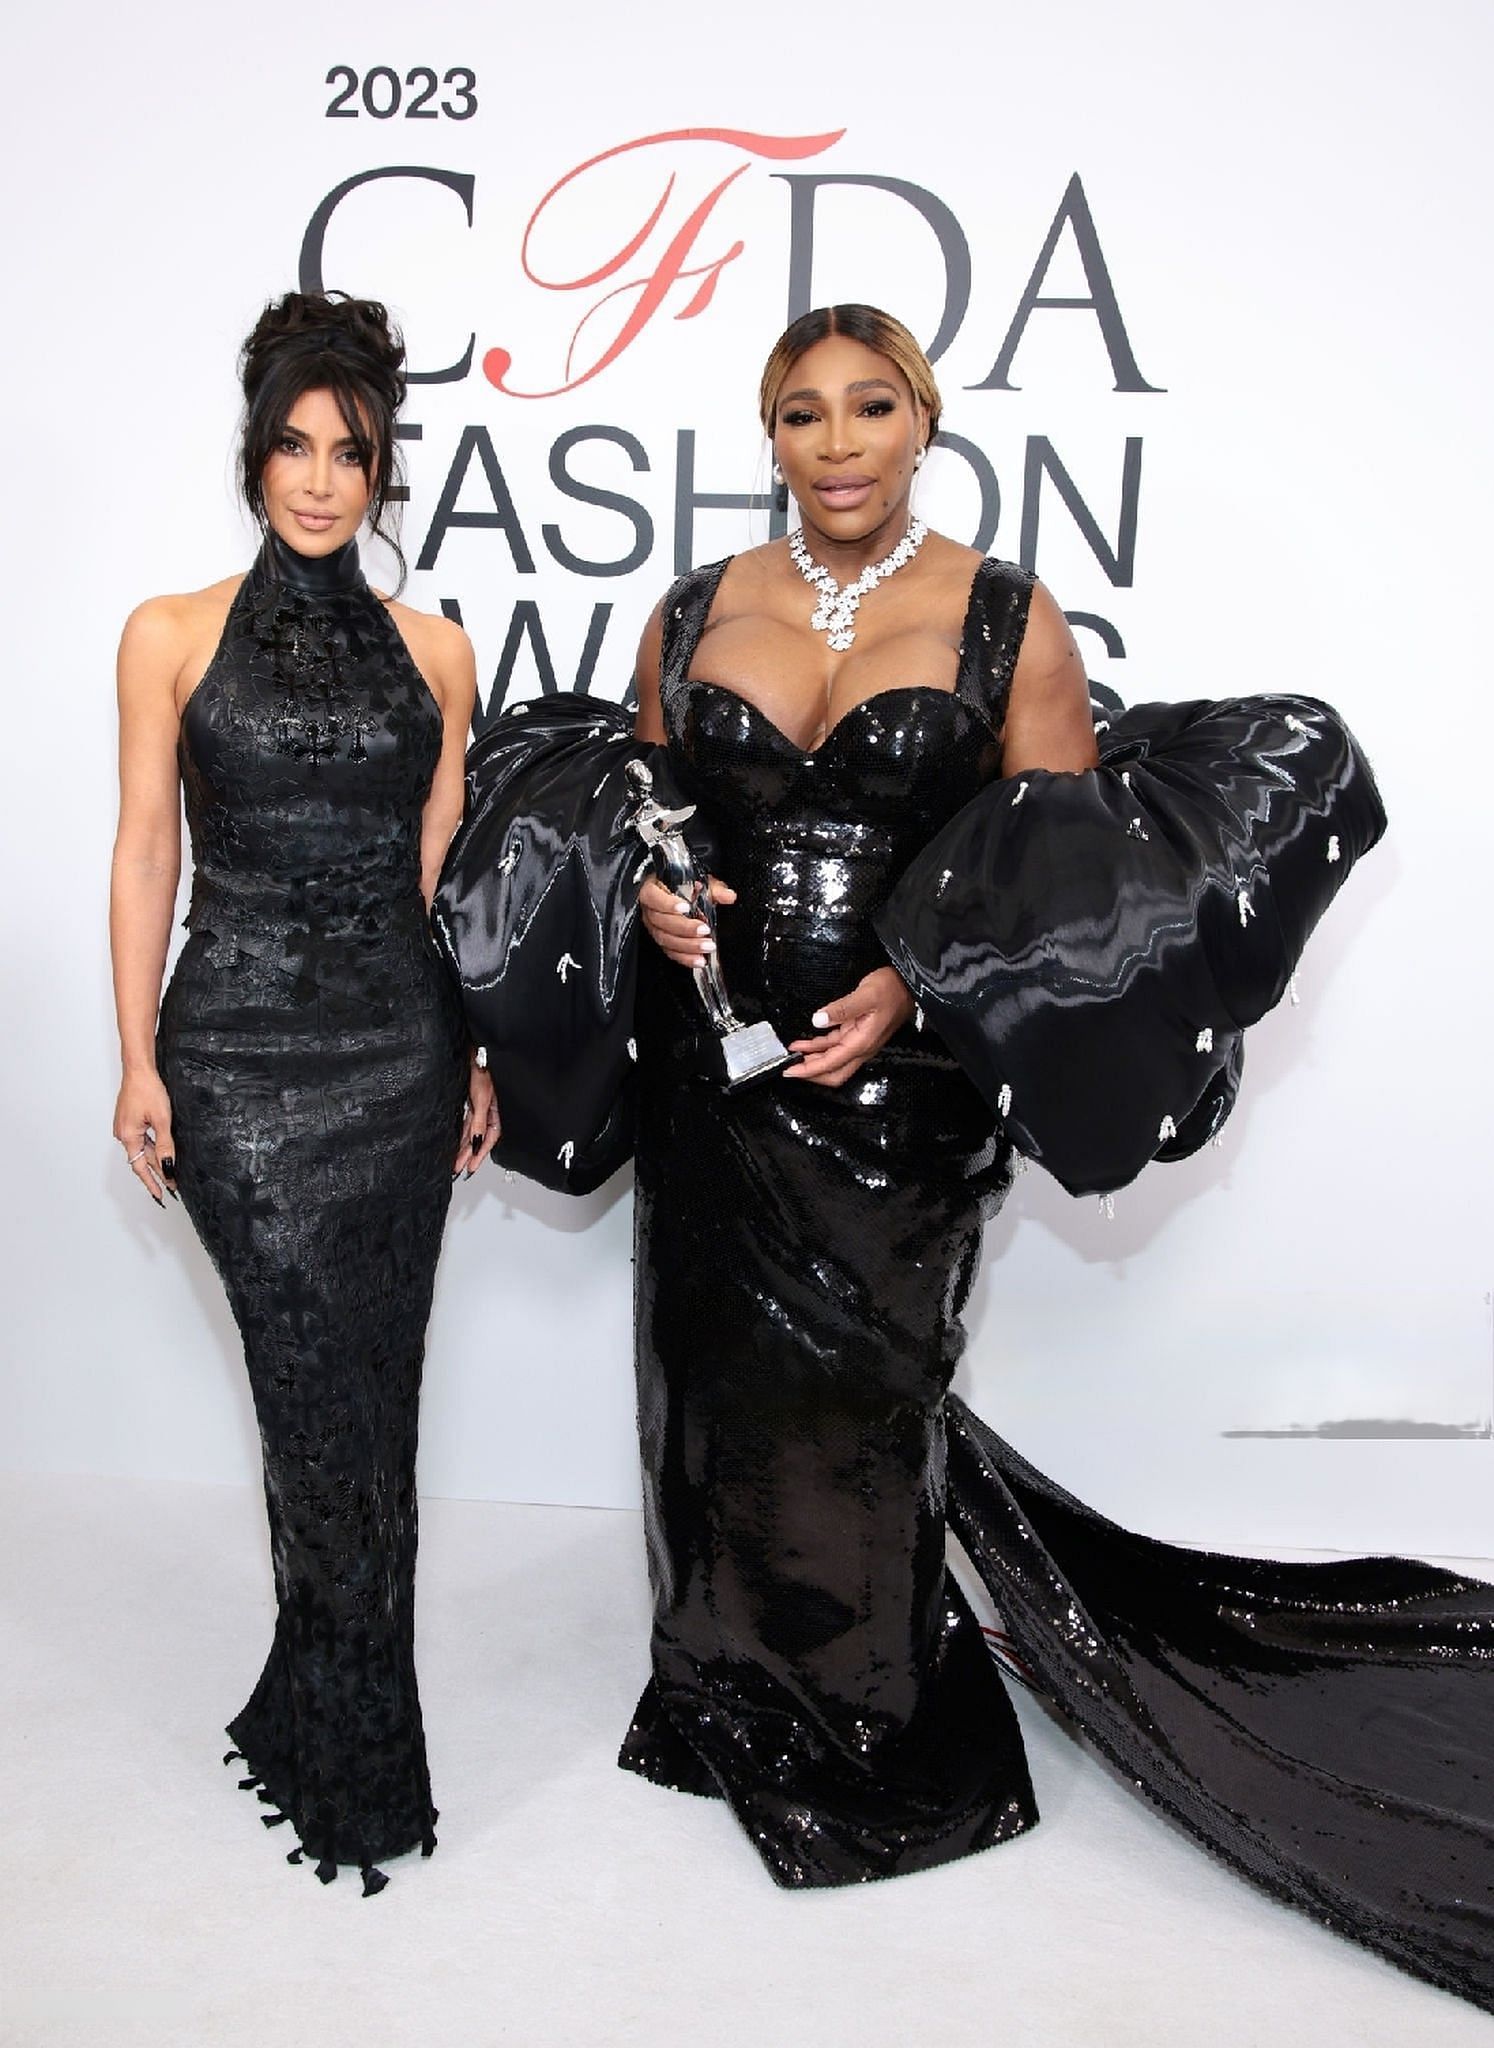 Serena Williams and Kim Kardashian at the 2023 CFDA Fashion Awards via Getty Images